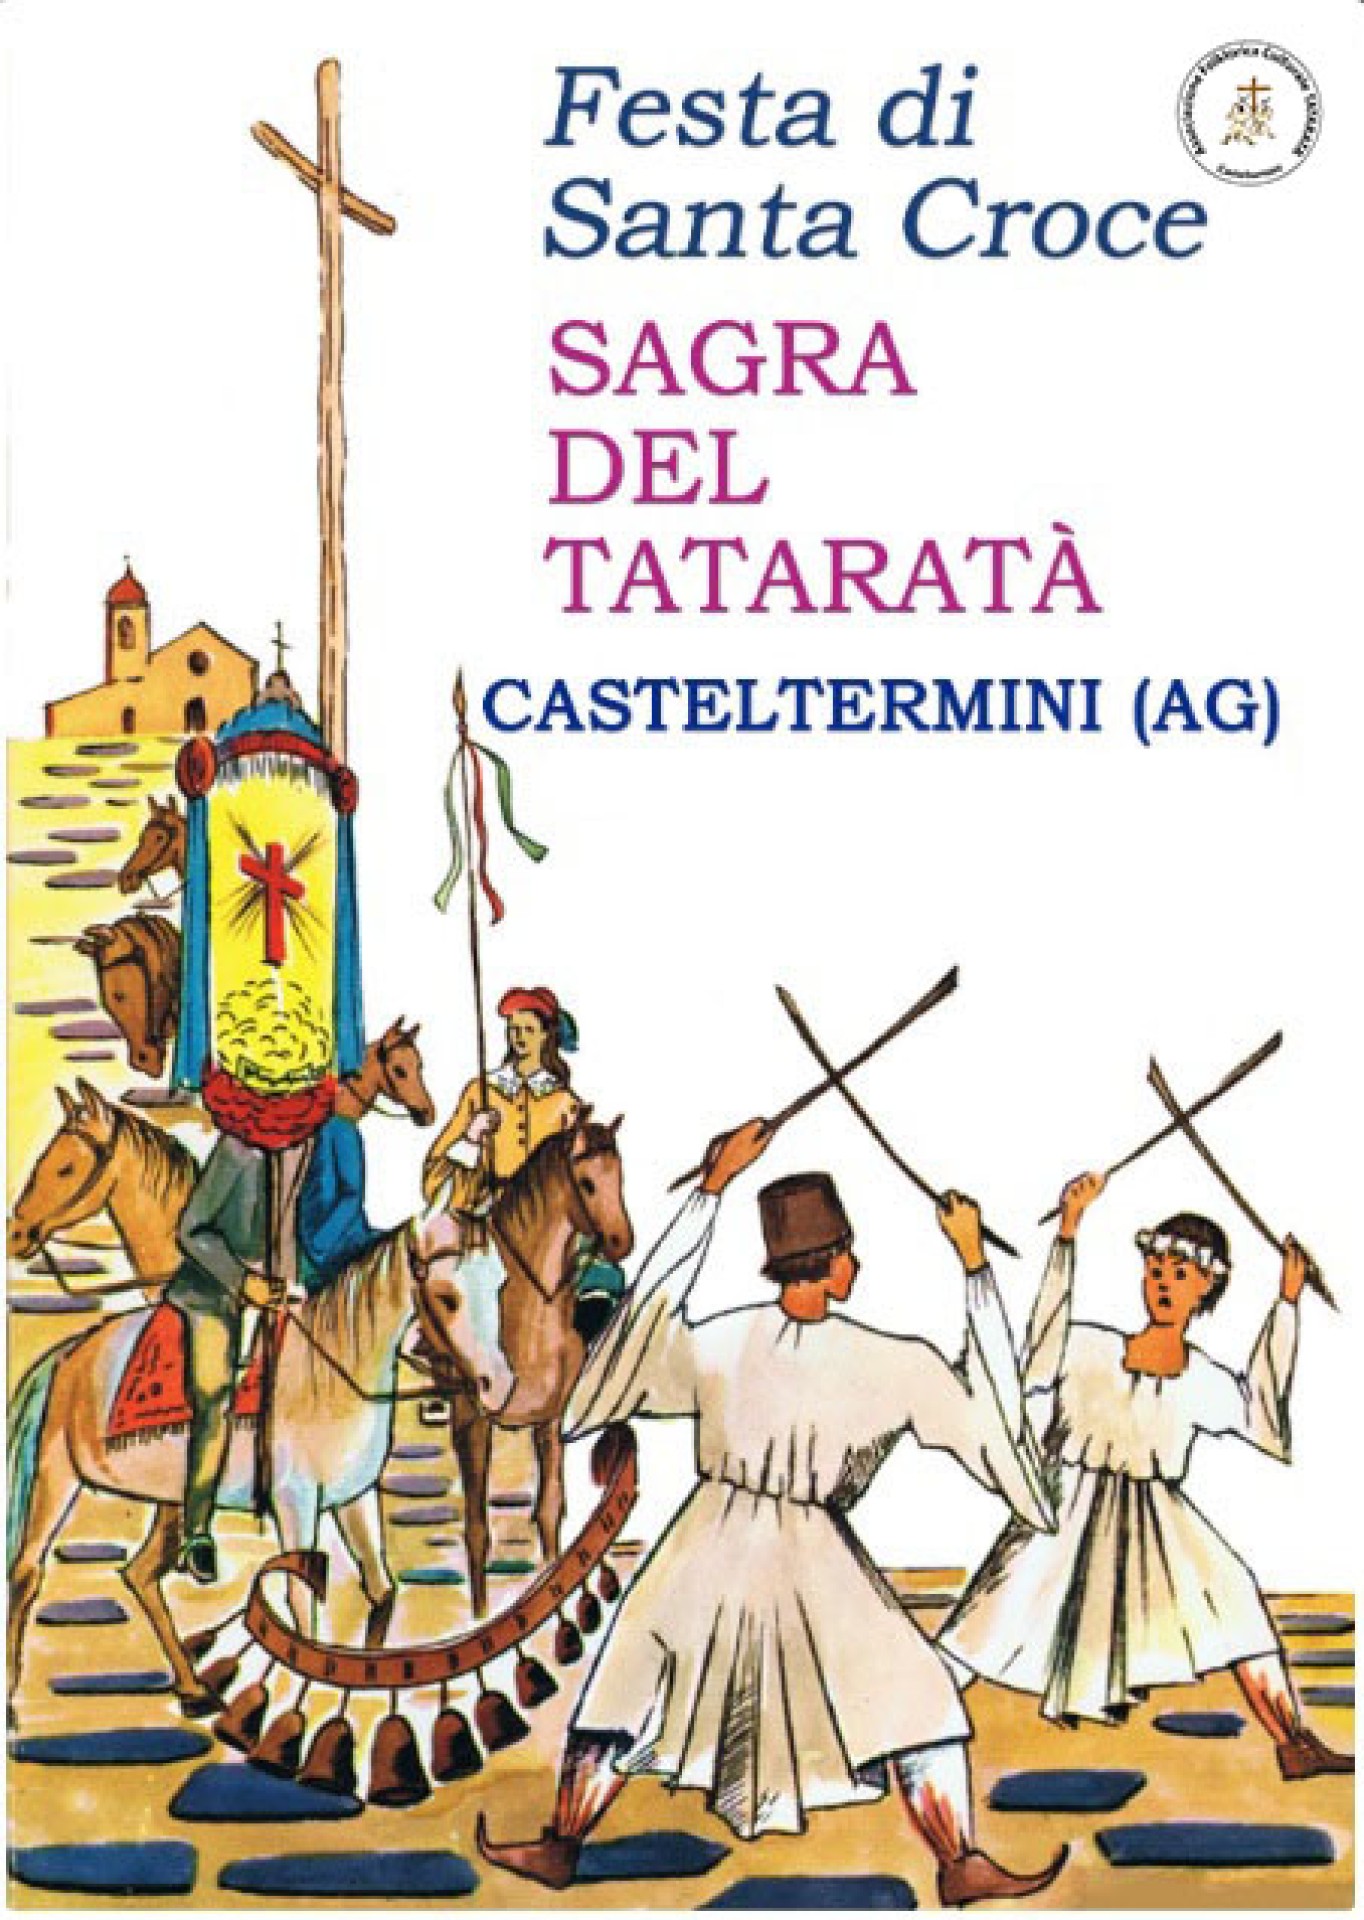 356° SAGRA DEL TATARATA' - FESTA DI SANTA CROCE